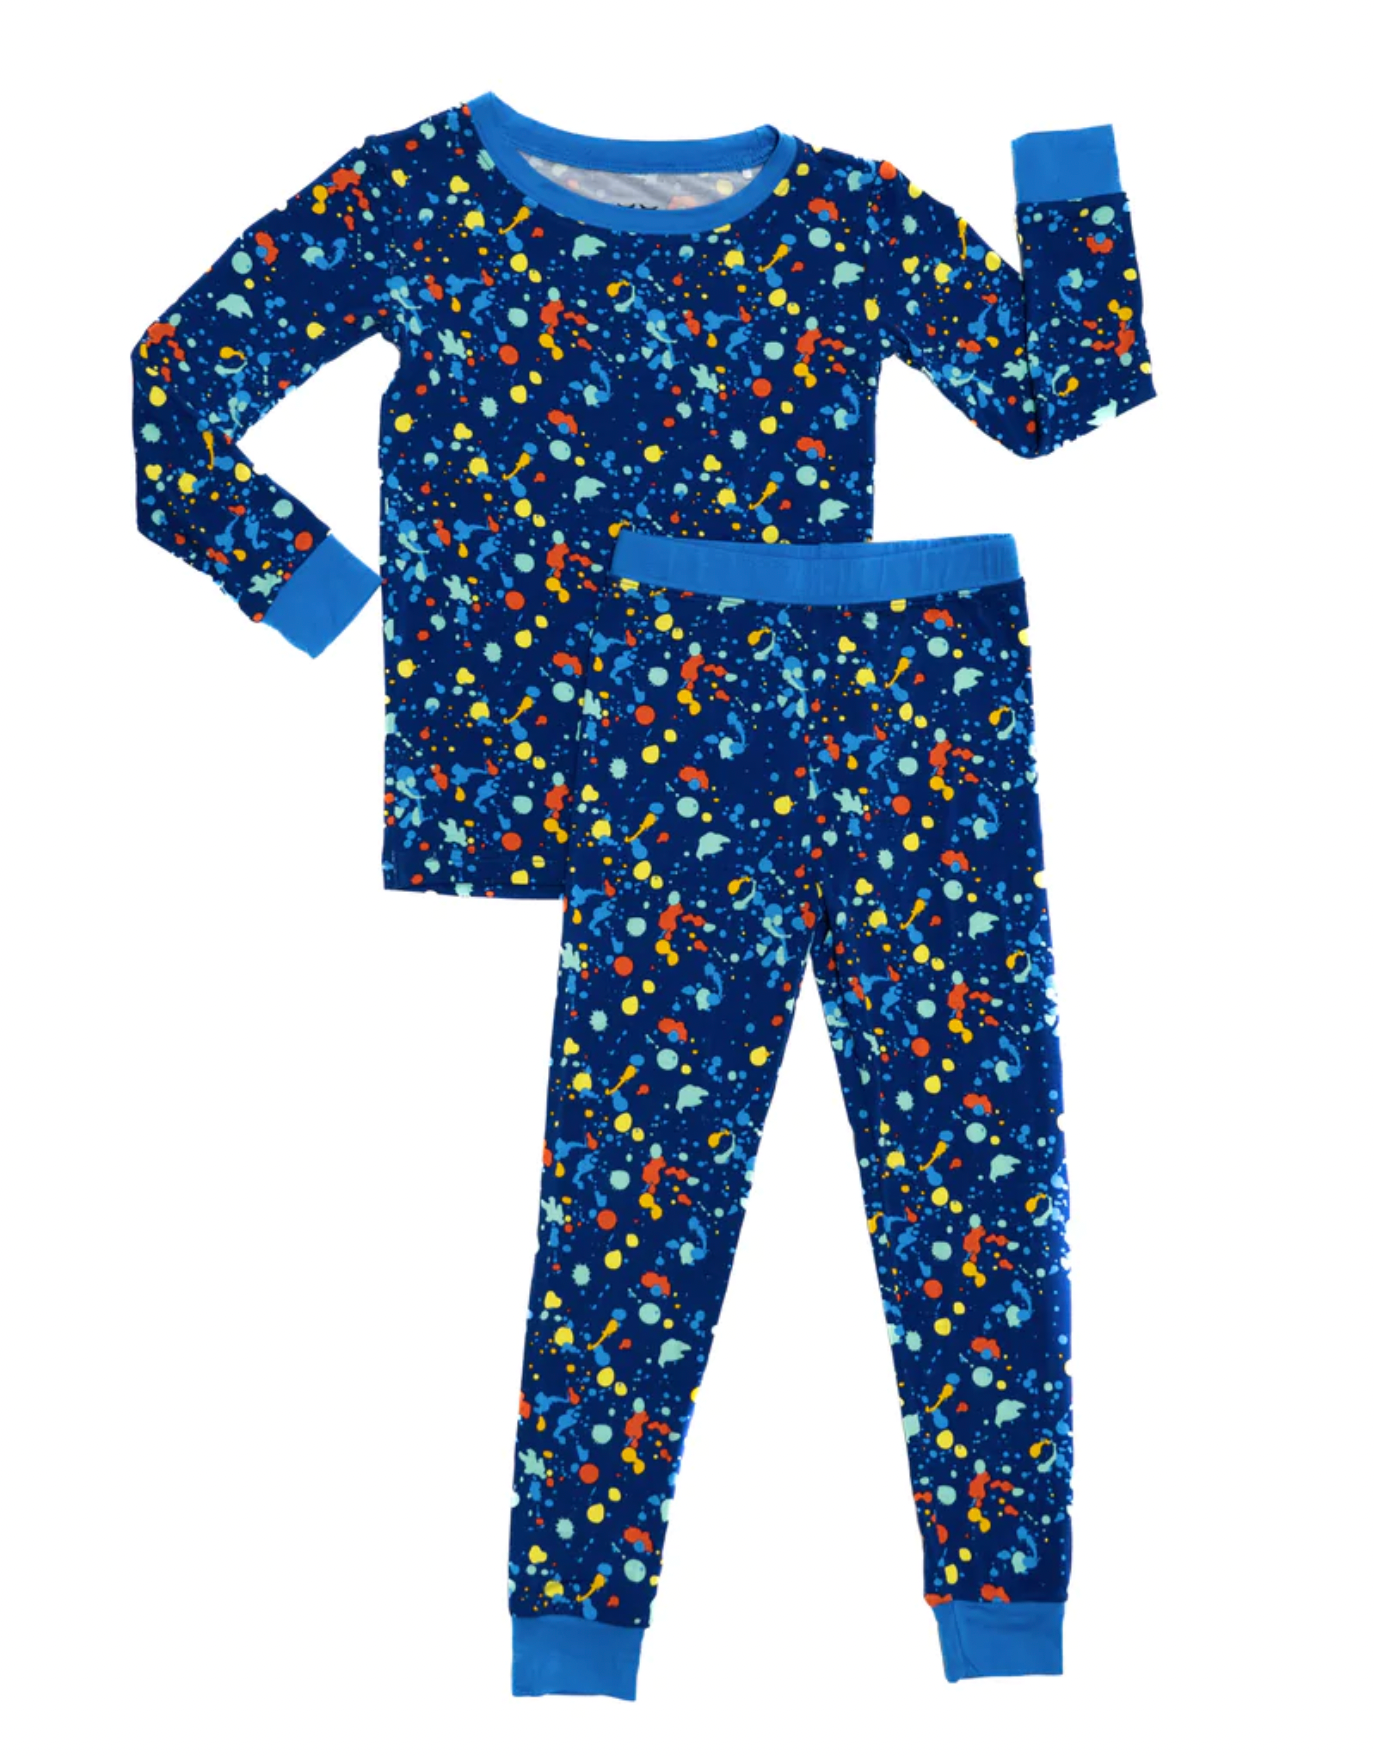 Blue Paint Pajamas